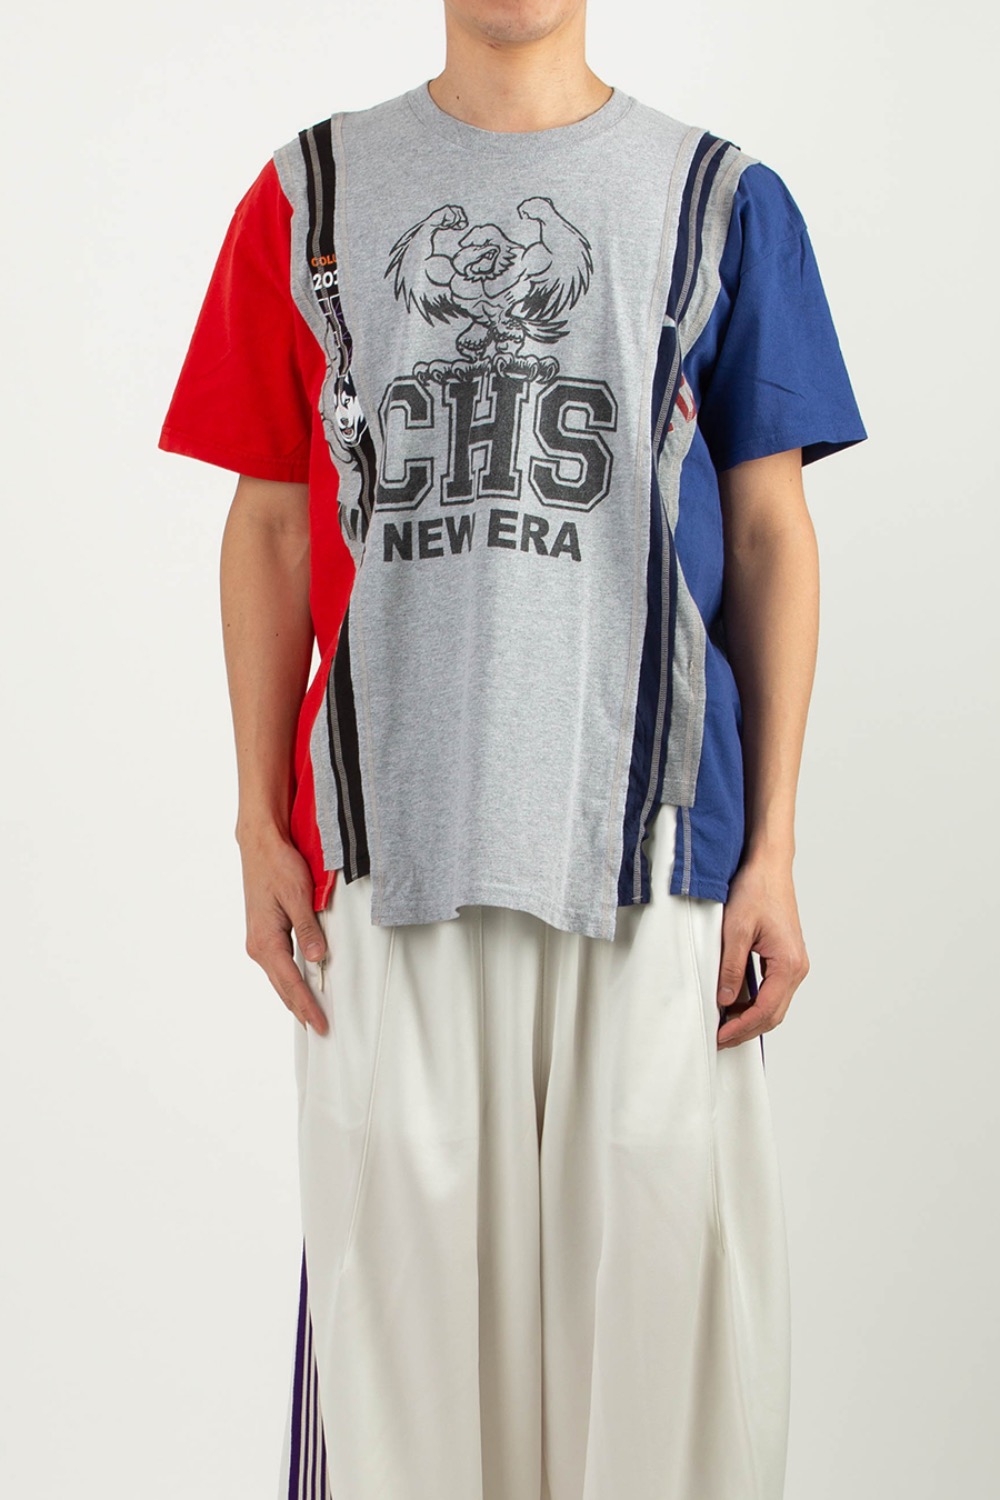 14700円 法人向販売 needles x end of the world Tシャツ Lサイズ T 